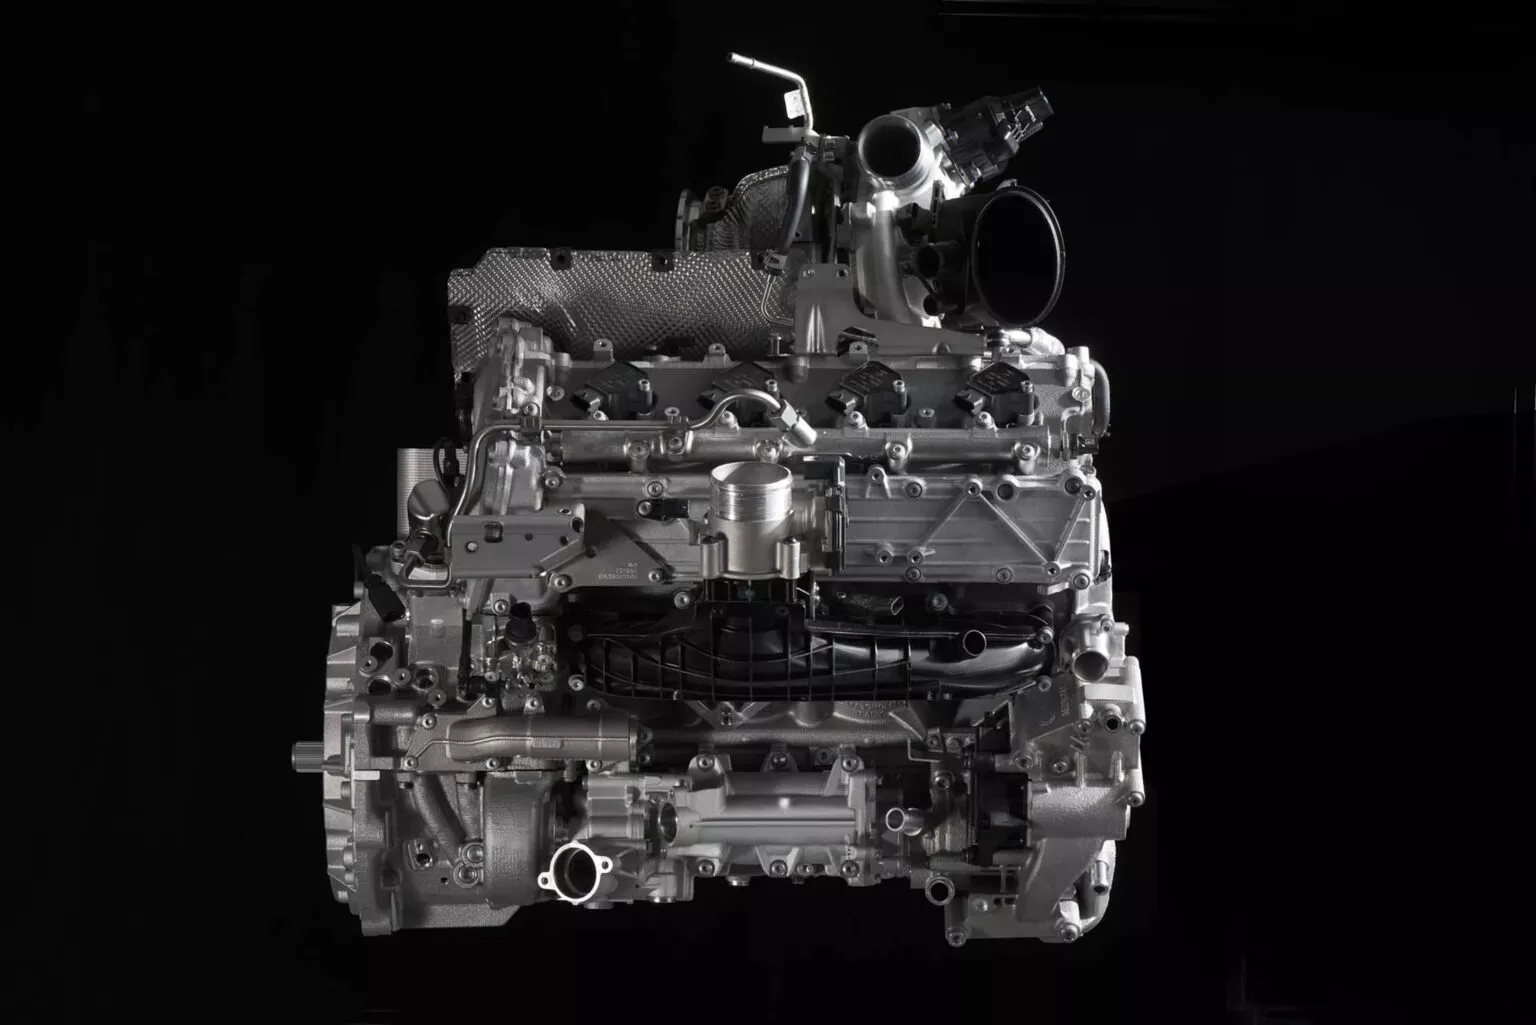 Novo motor V8 biturbo da Lamborghini